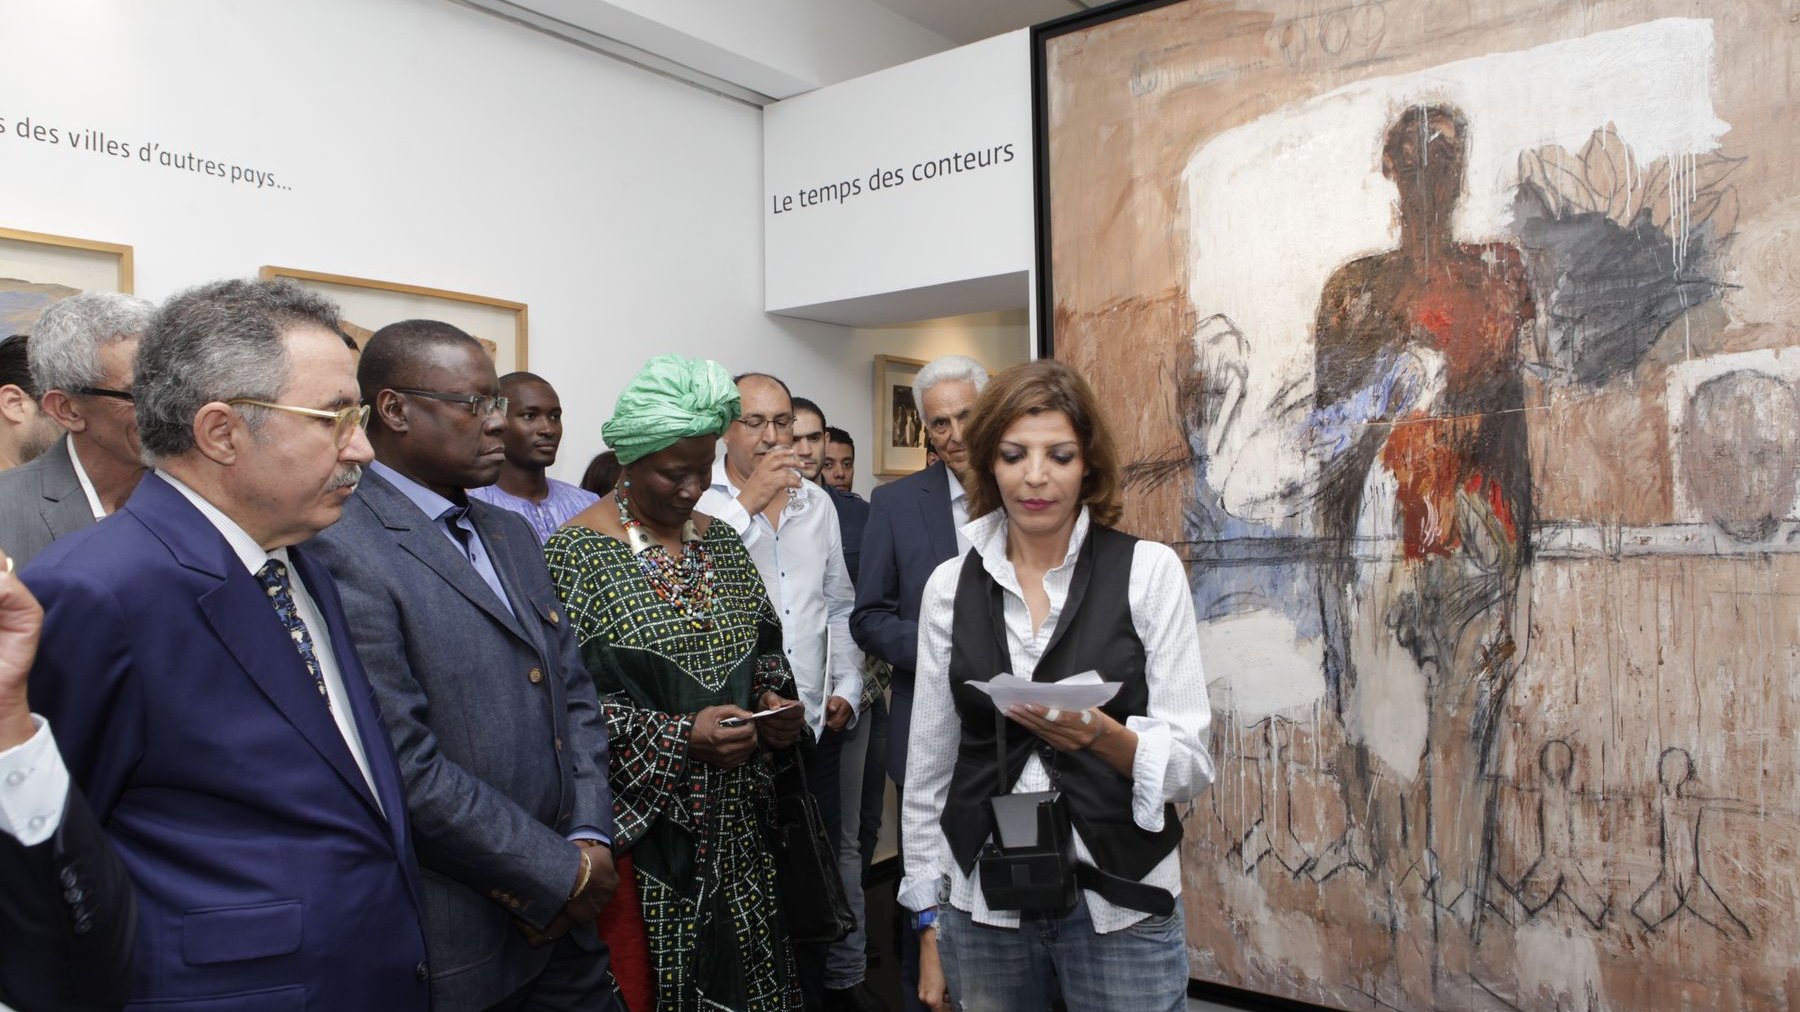 الفنانة لطيفة أحرار تتحدث للضيوف عن خصوصية معرض الراحل "محمد القاسمي الإفريقي"
